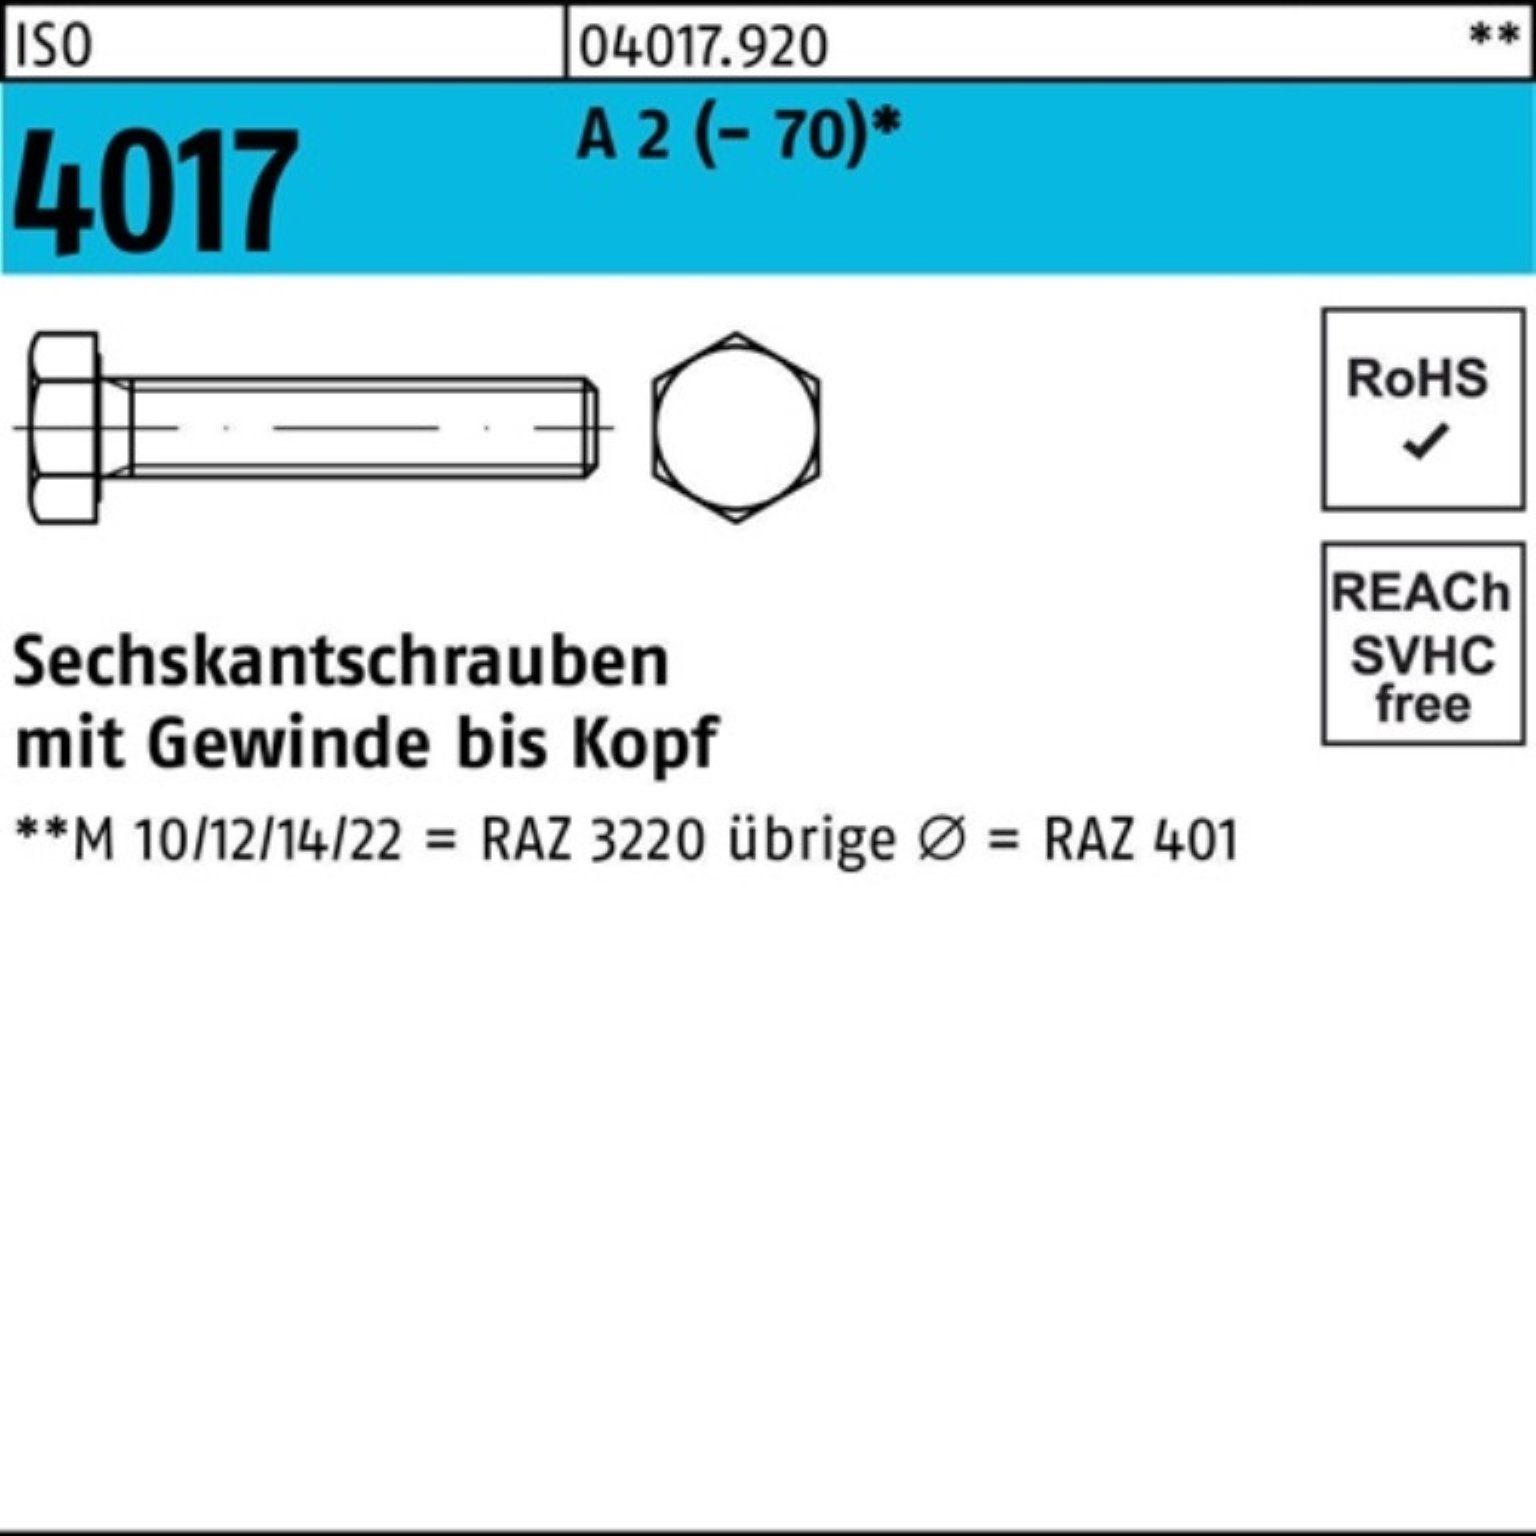 Bufab Sechskantschraube 500er Pack Sechskantschraube ISO 4017 VG M5x 20 A 2 (70) 500 Stück | Schrauben